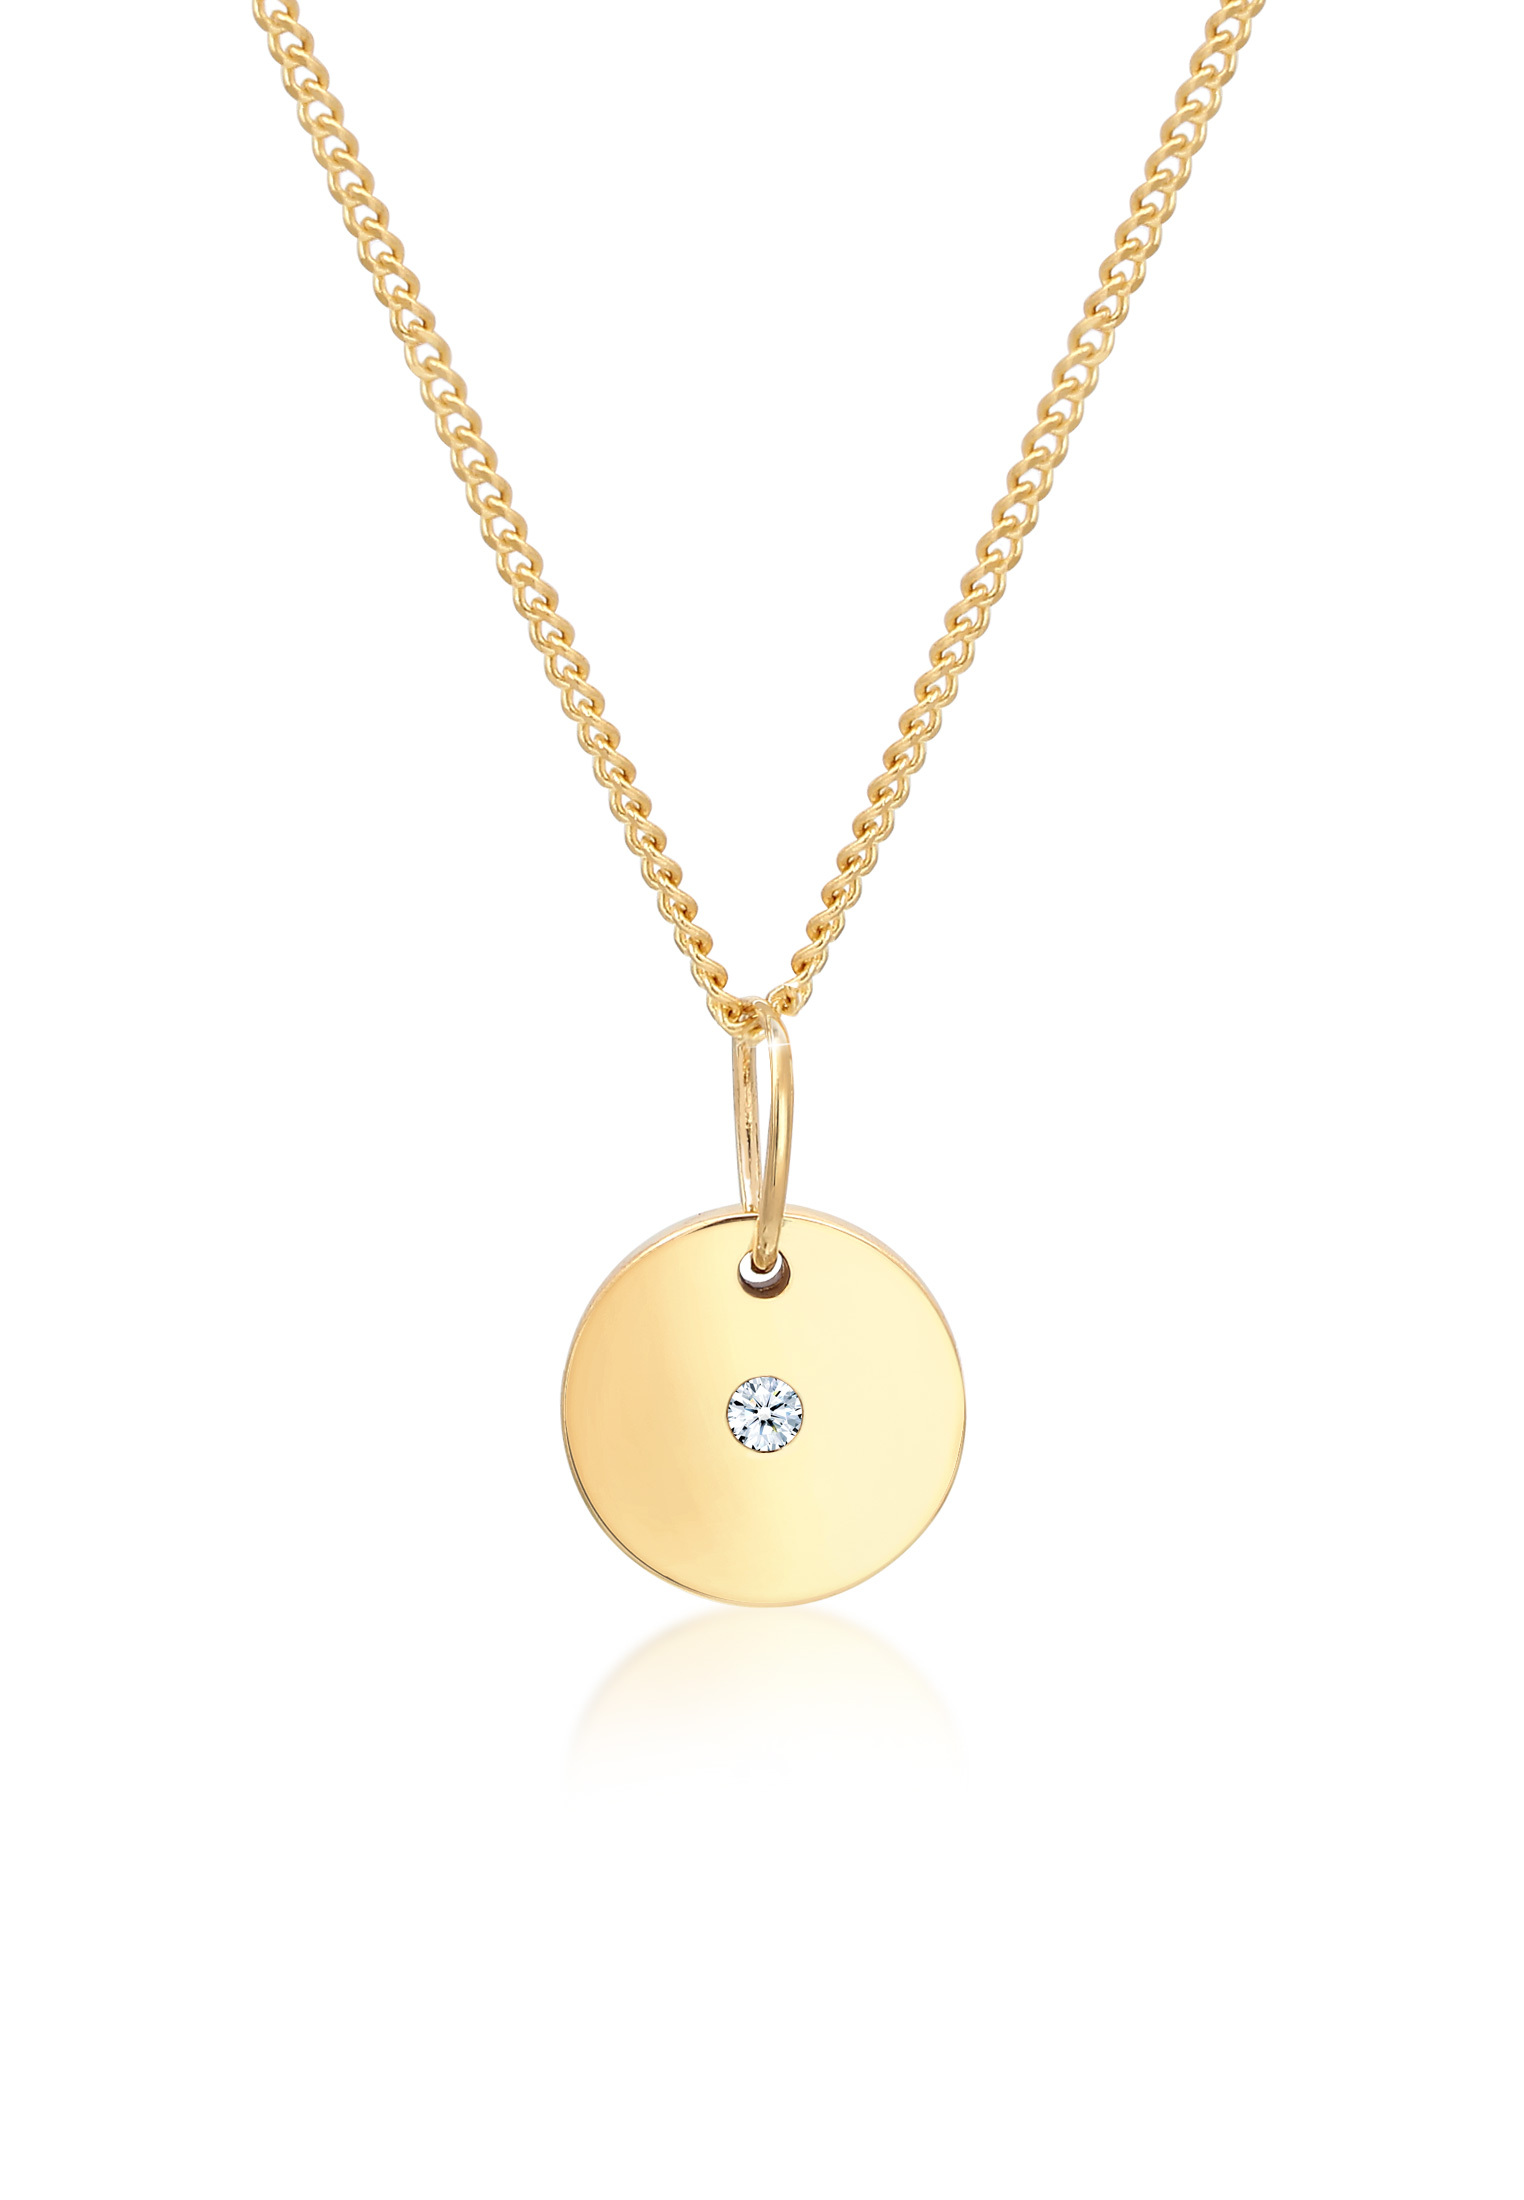 Halskette Kreis | Diamant ( Weiß, 0,015 ct ) | 585 Gelbgold